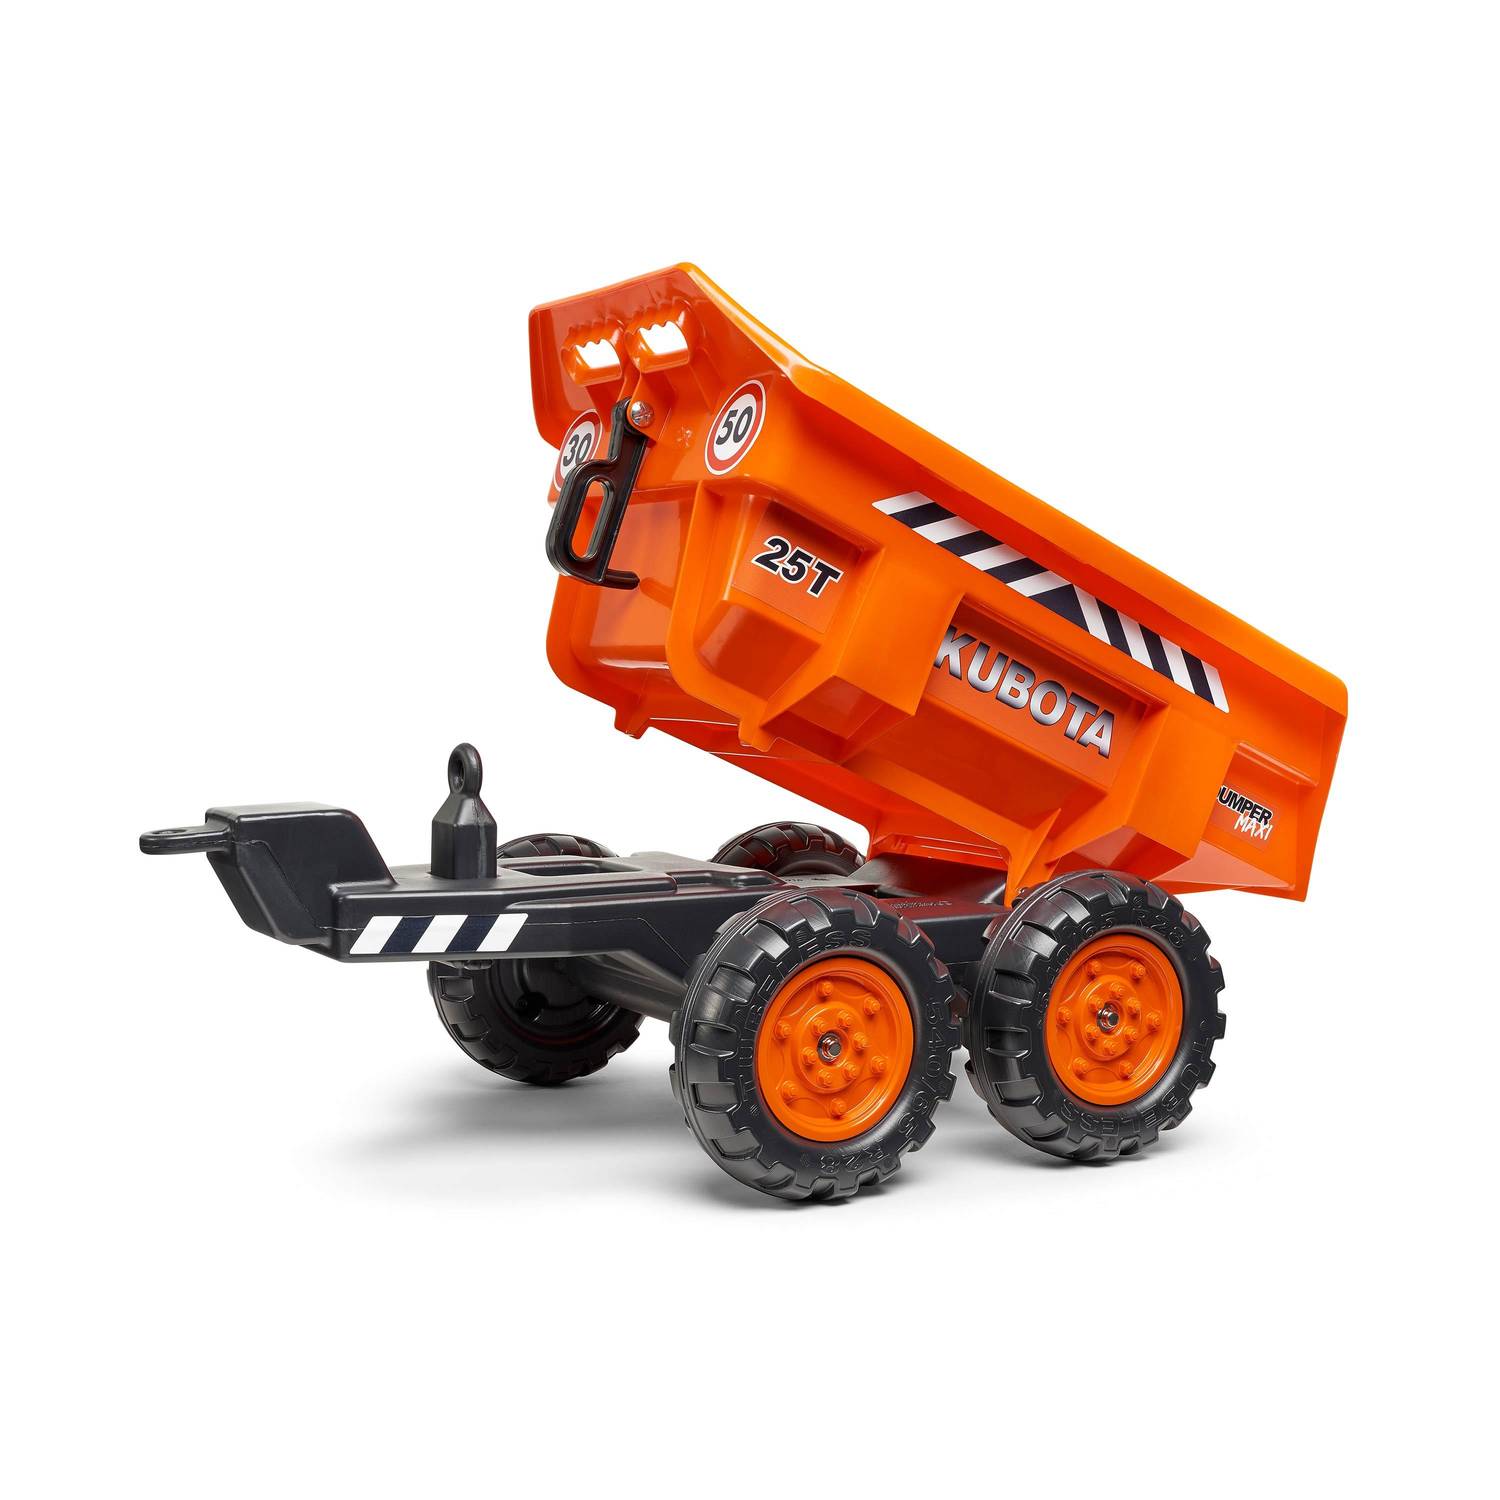  Tractopelle Kubota pour enfant - Bob - Tracteur à pédales avec excavatrice et remorque basculante 4 roues, orange Photo2